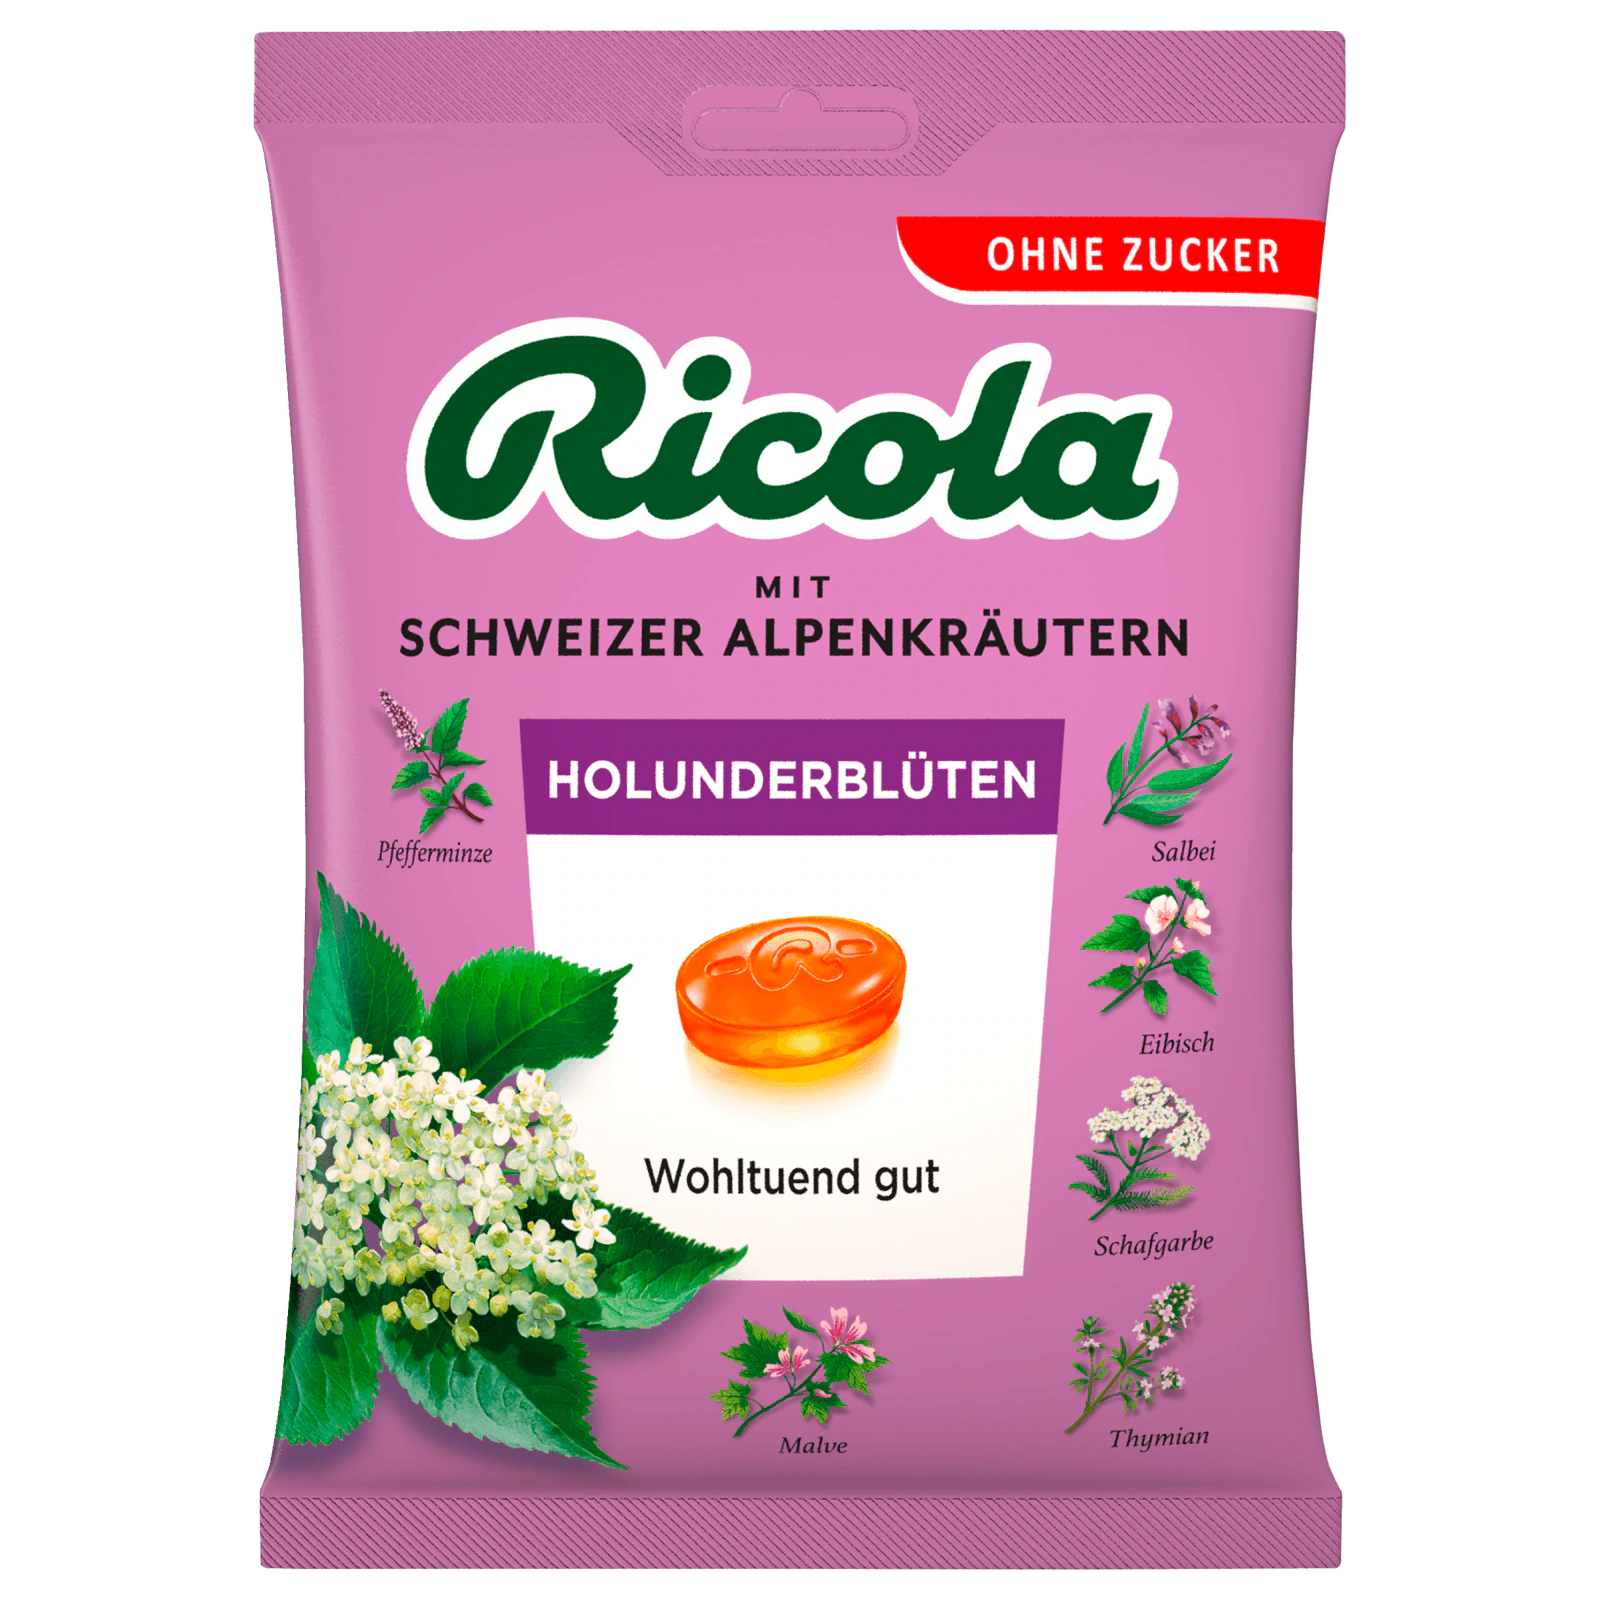 Ricola Holunderblüten zuckerfrei 75g bei REWE online bestellen!